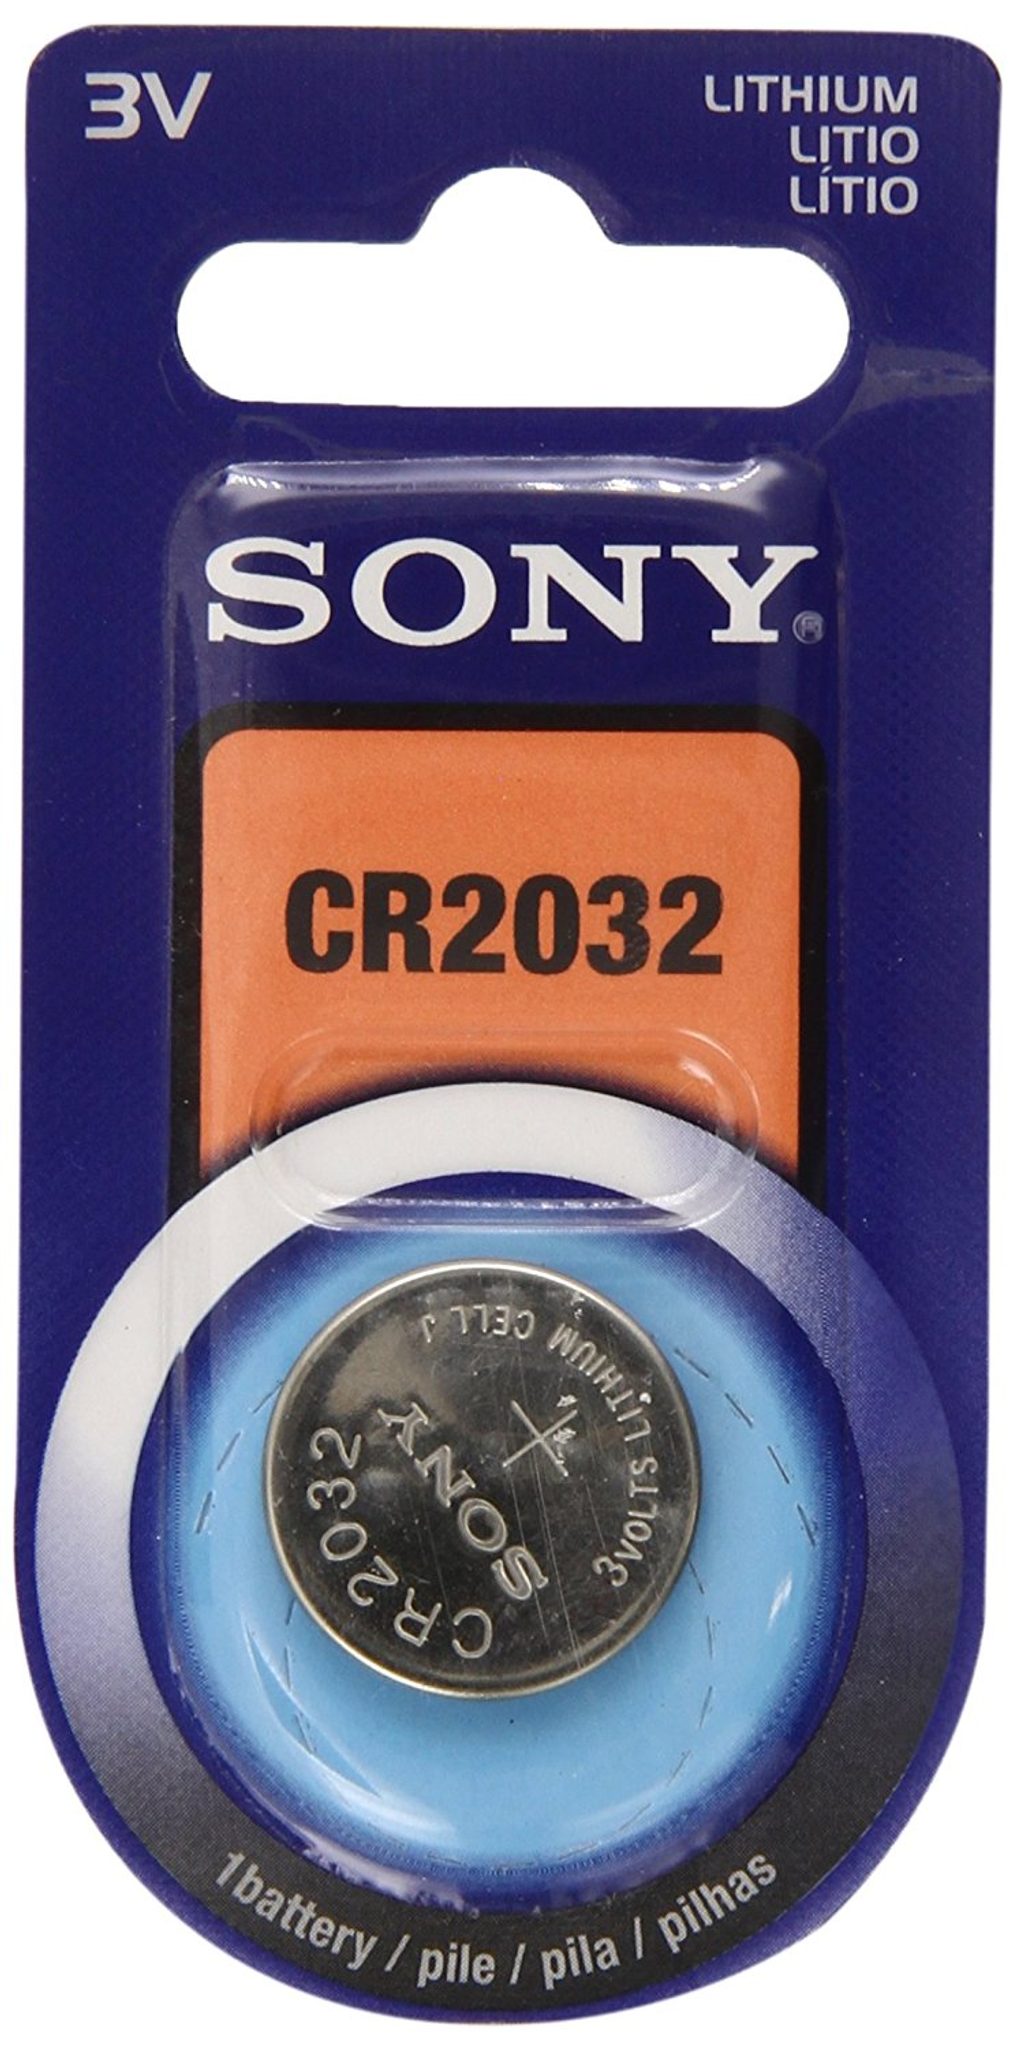 Baterie CR2032 Sony 1ks